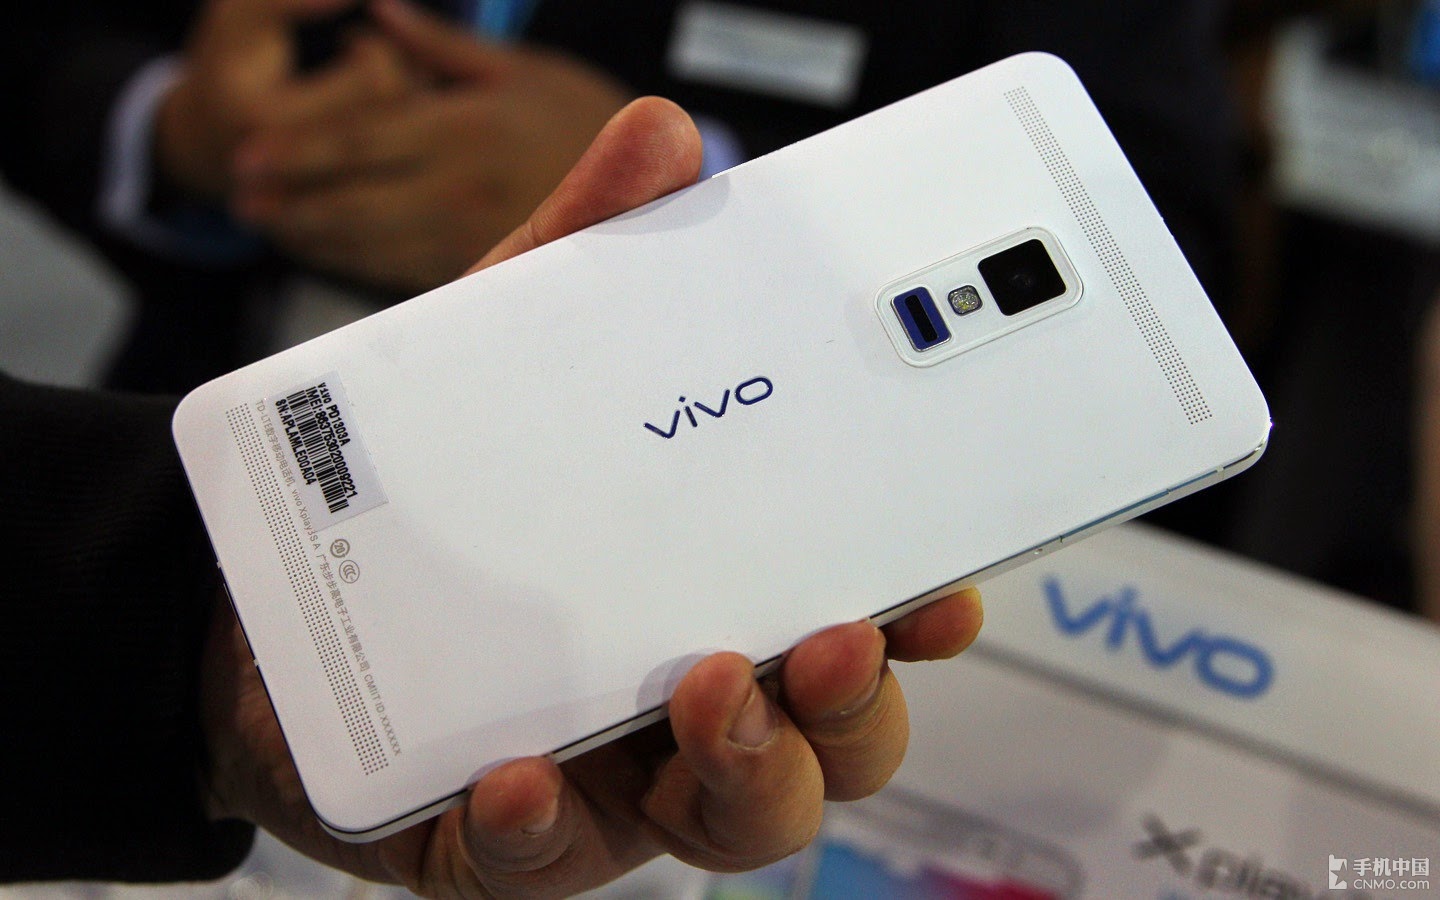 Vivo play. Vivo XPLAY 3s 2013 г. Vivo 2014 года. Vivo x Note фото. 2014 Лучший китайский смартфон 4g.